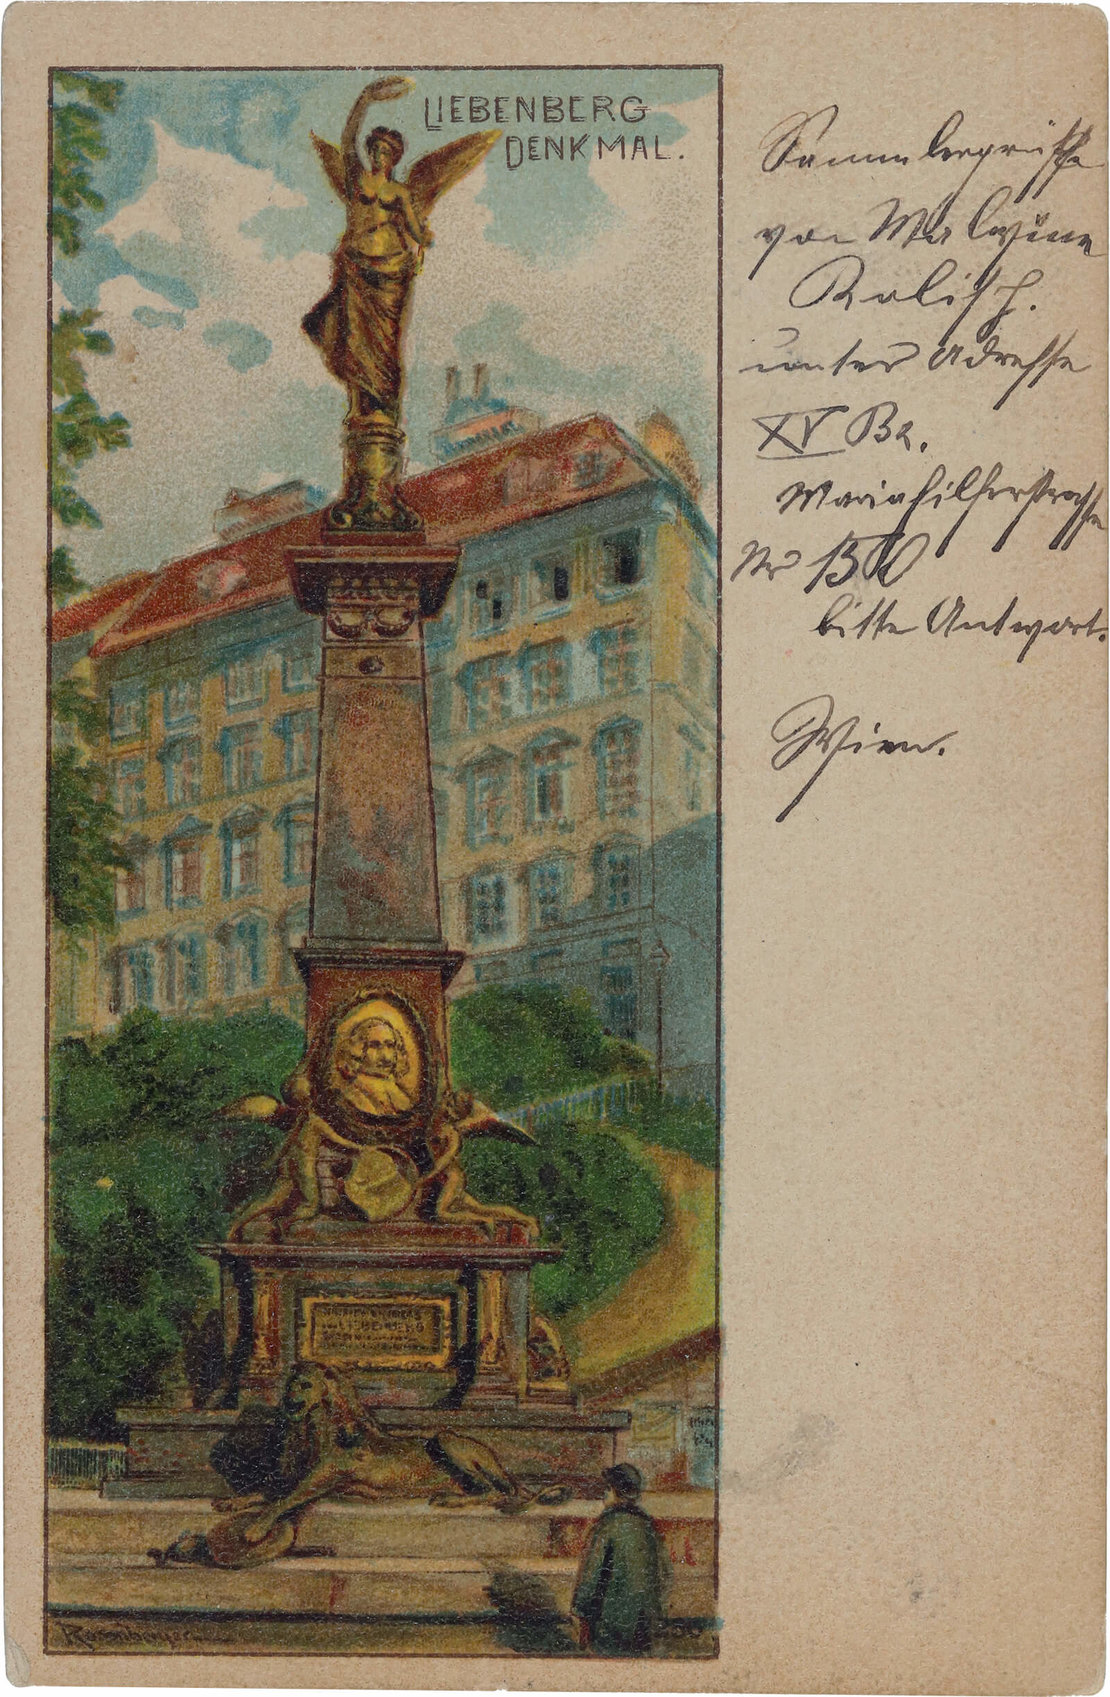 Ansichtskarte vom Universitätsring (damals Franzensring), adressiert 1898 an eine Empfängerin in Budapest mit der Mitteilung: „Sammlergrüsse von Malvine R. unter Adresse XV Bz. Mariahilferstrasse Nr. 150, bitte Antwort, Wien.“ 